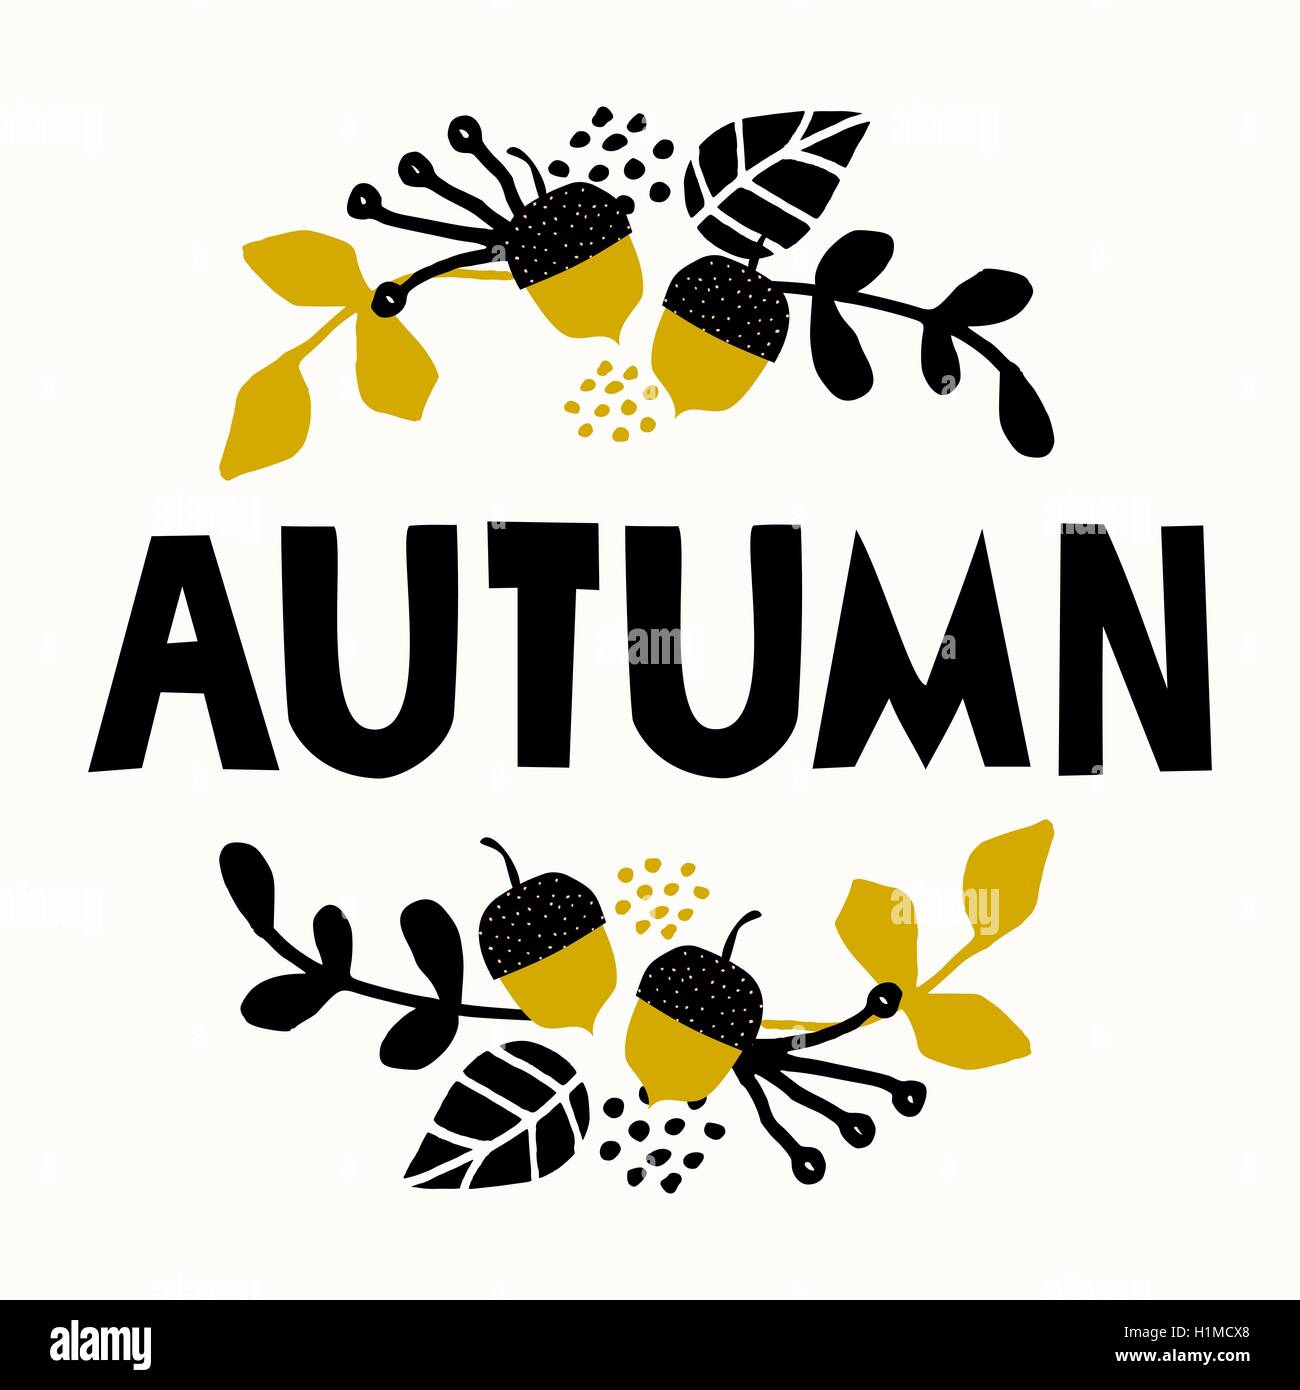 Typografischen Stildesign für die Herbstsaison mit schwarzen Buchstaben, Blumenschmuck und geometrische Elemente, isoliert auf weiß b Stock Vektor